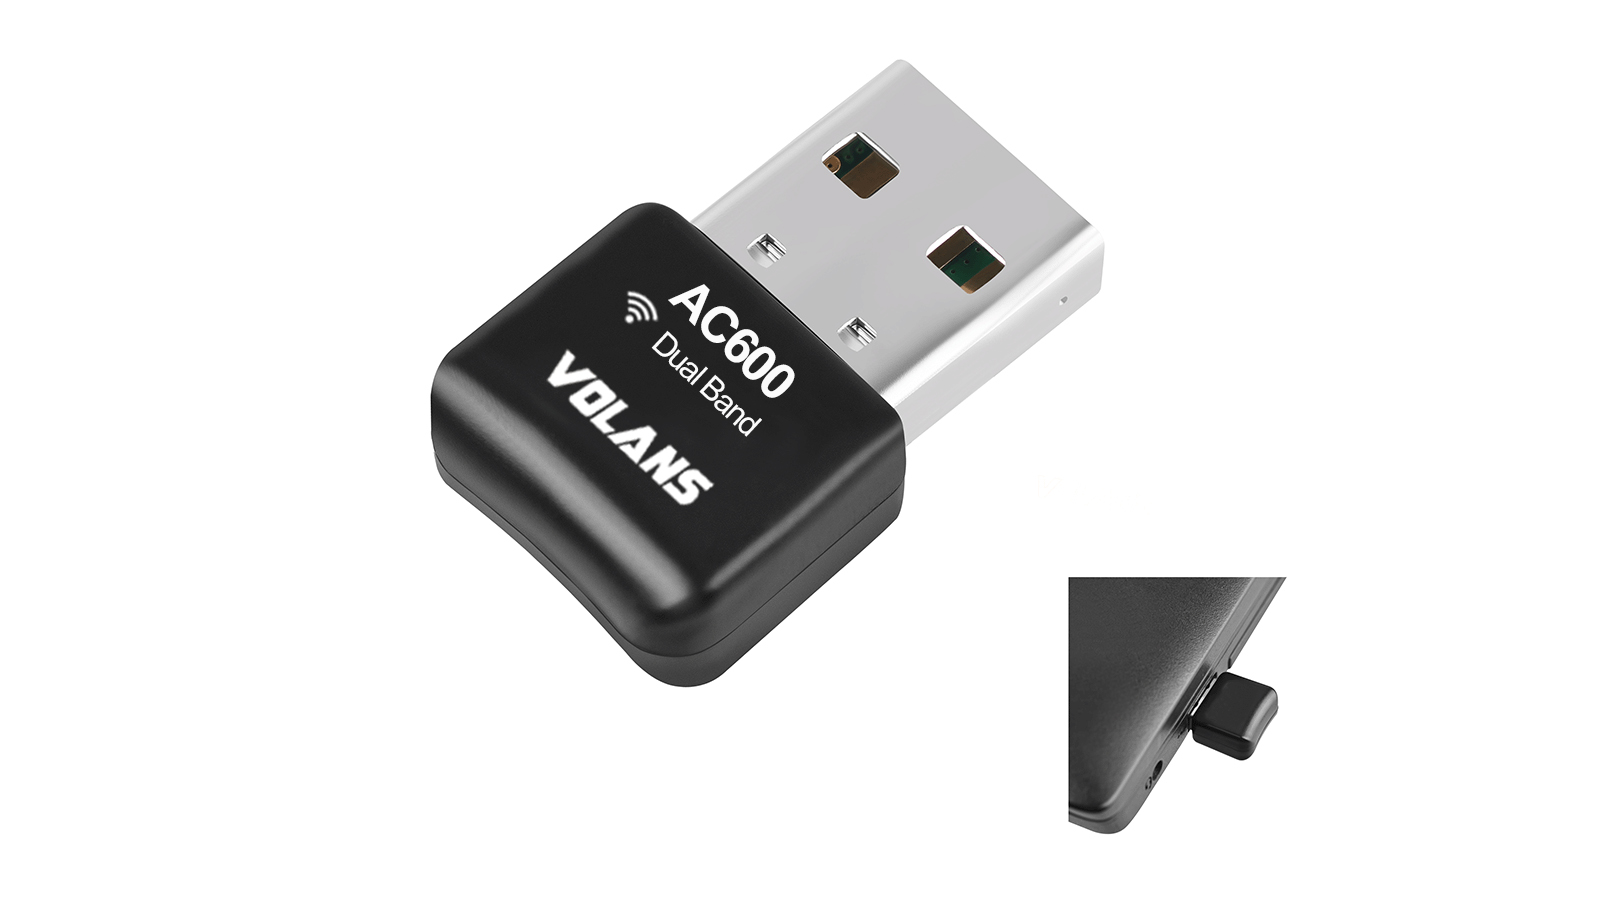 Volans AC600 Dual Band Mini Wireless USB Adapter (VL-UW60-FD)